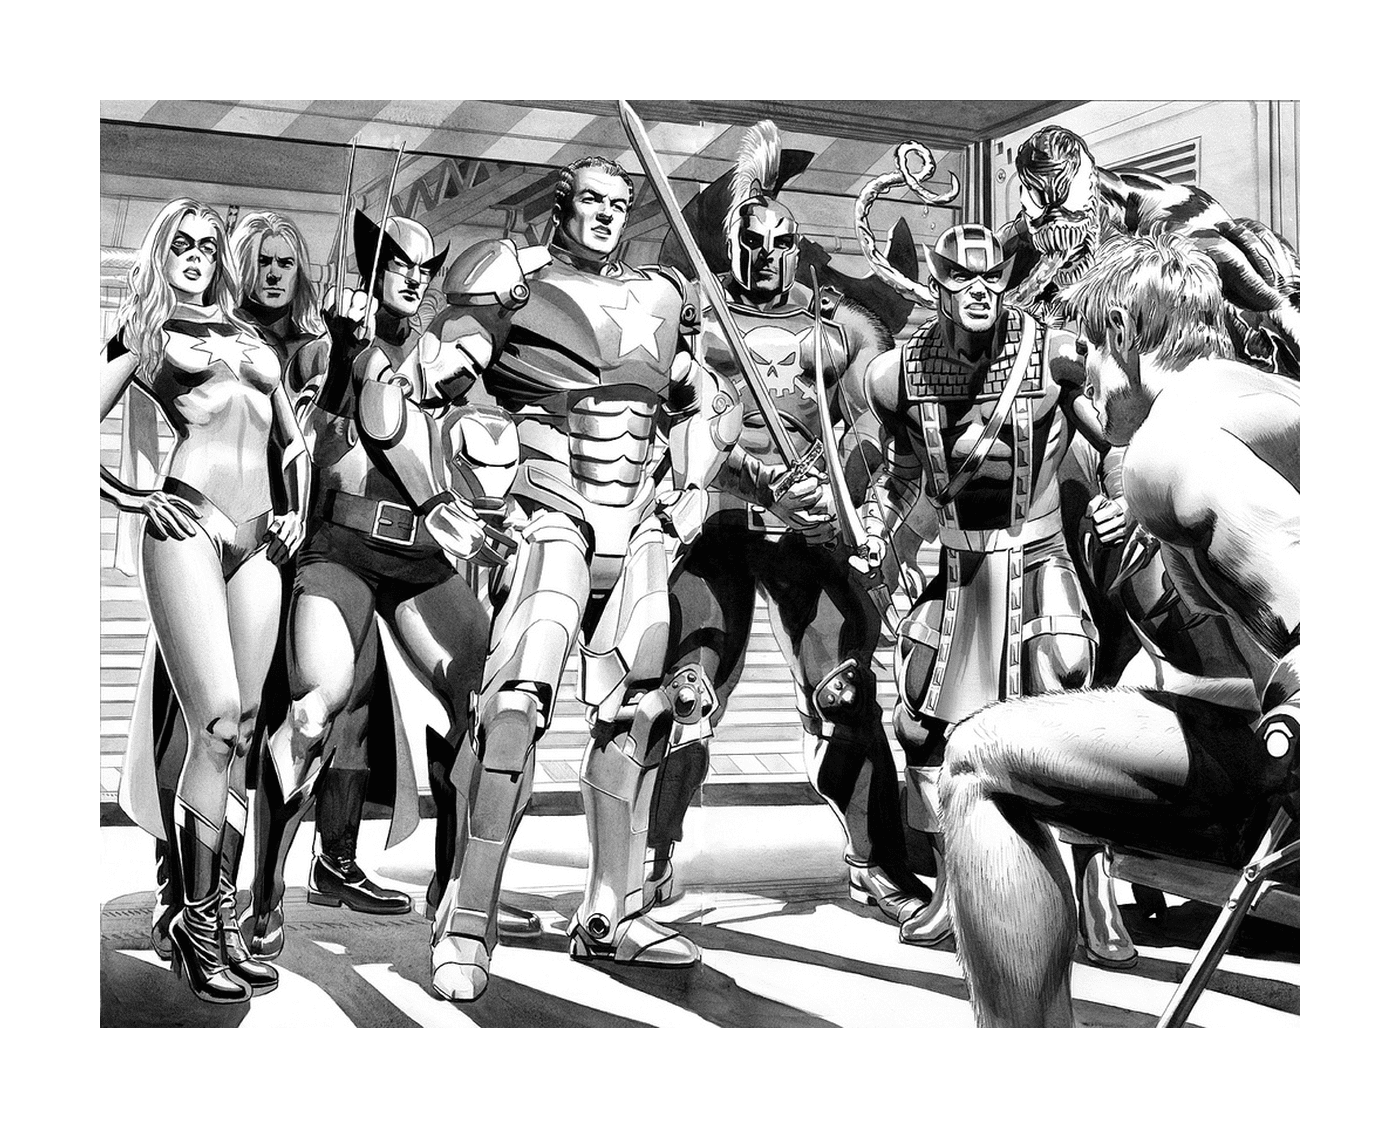  Черно-белая фотография группы супергероев 